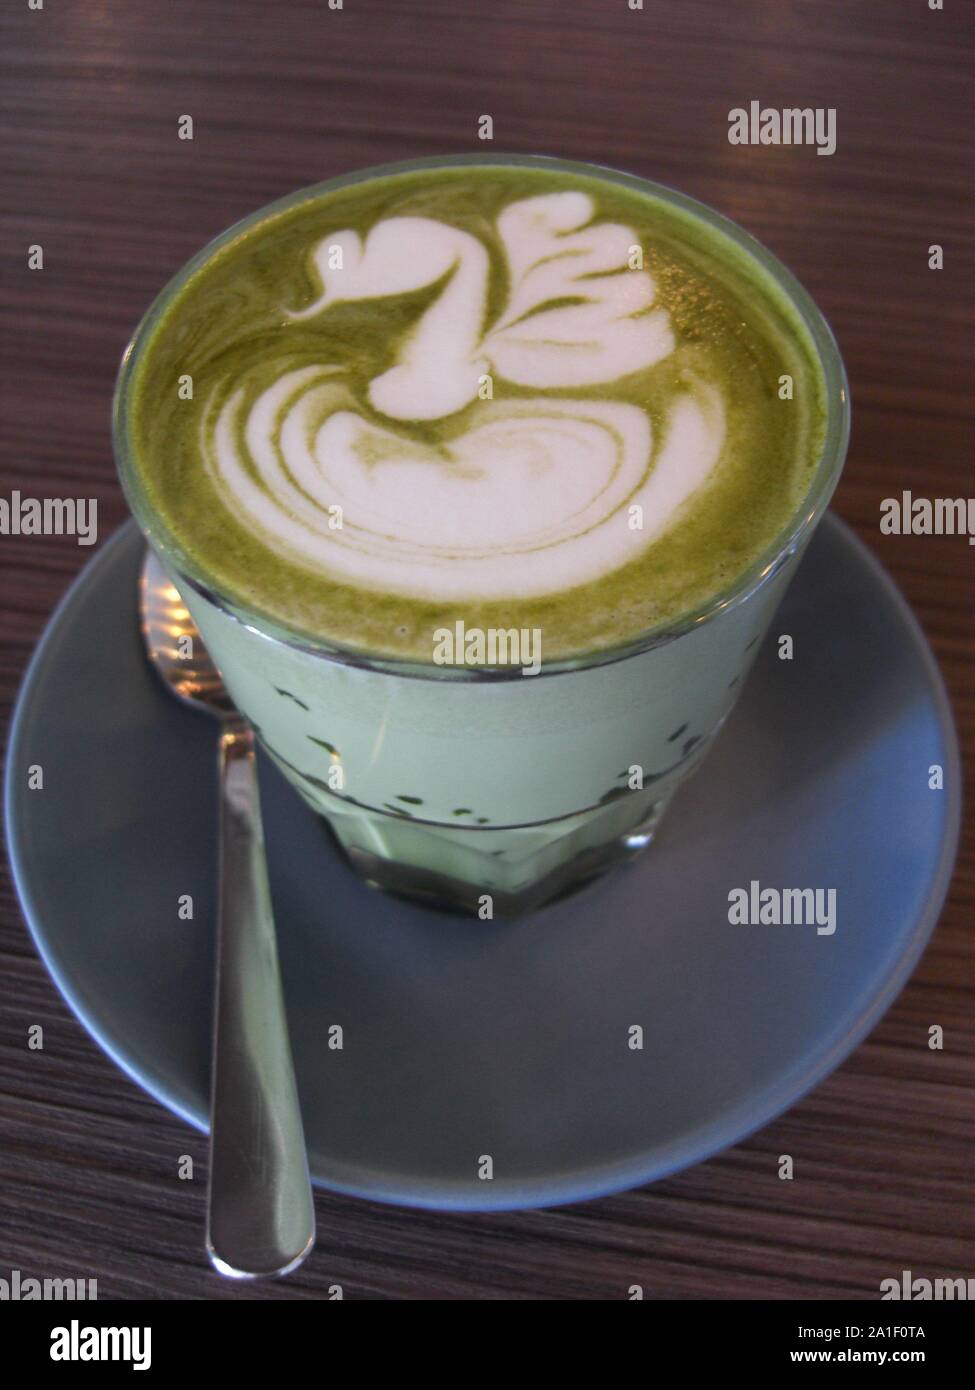 Thé vert matcha latte avec beauitiful latte art et servi dans un verre Banque D'Images